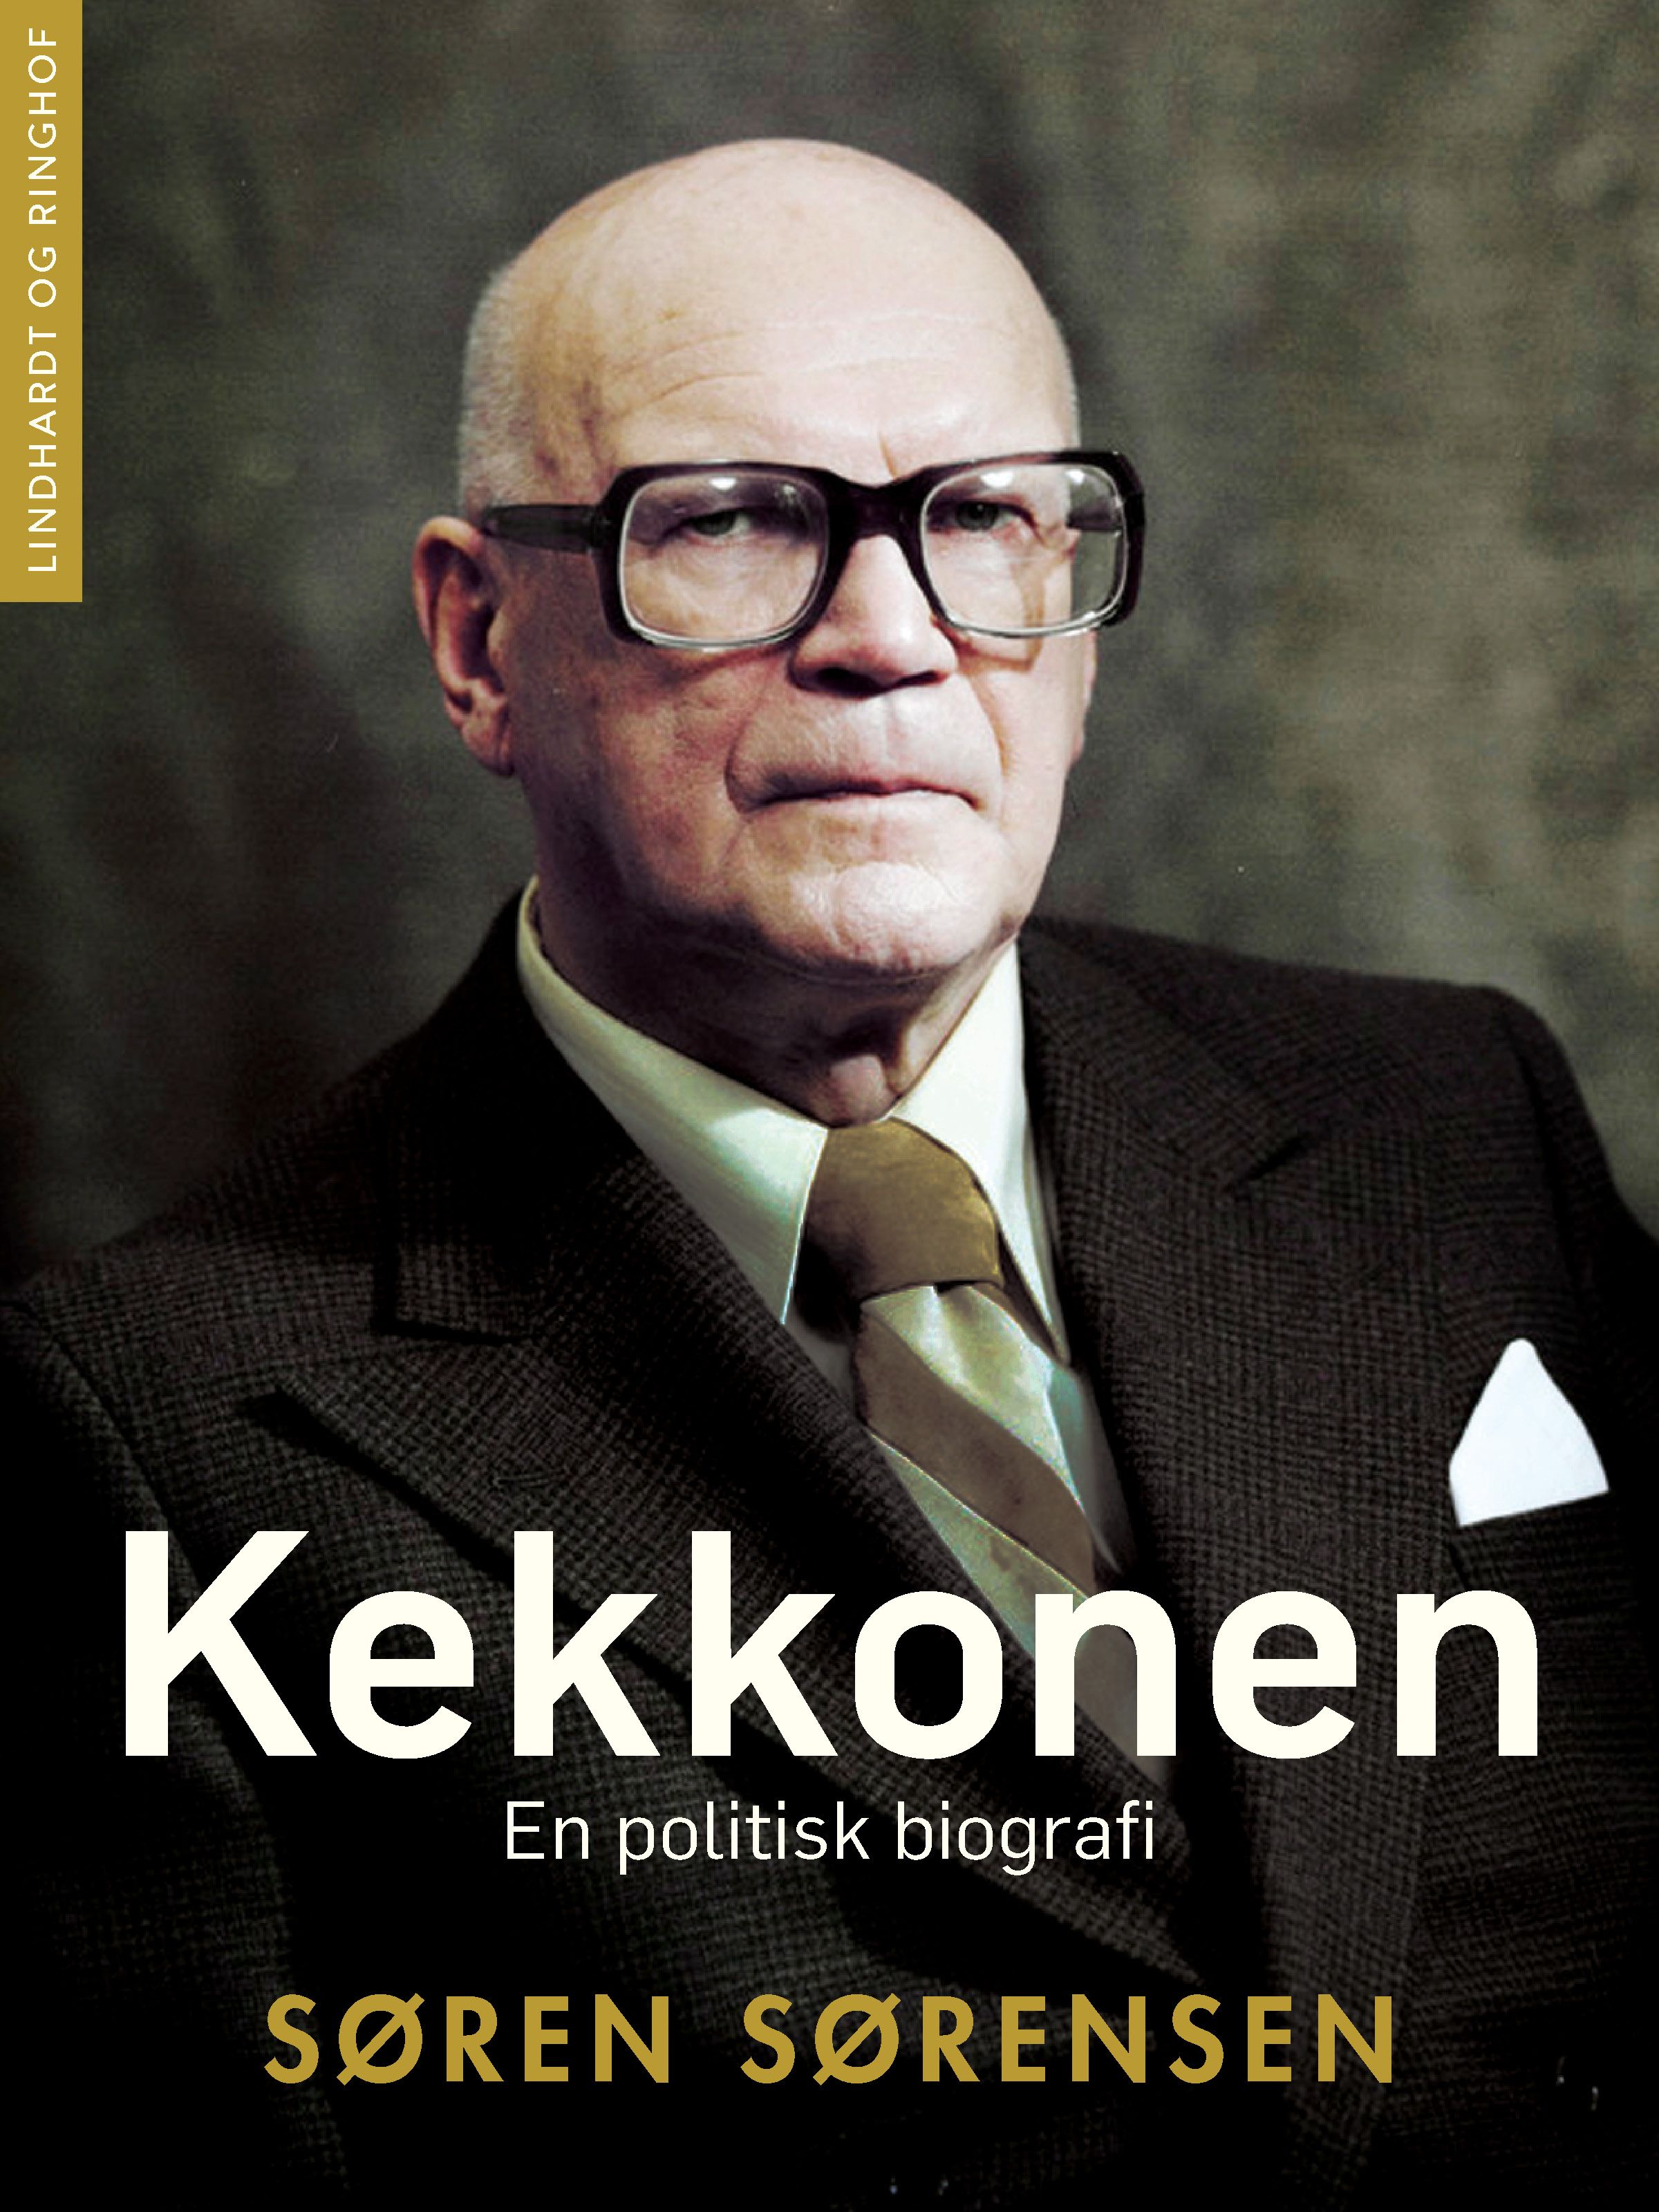 Kekkonen. En politisk biografi, e-bok av Søren Sørensen